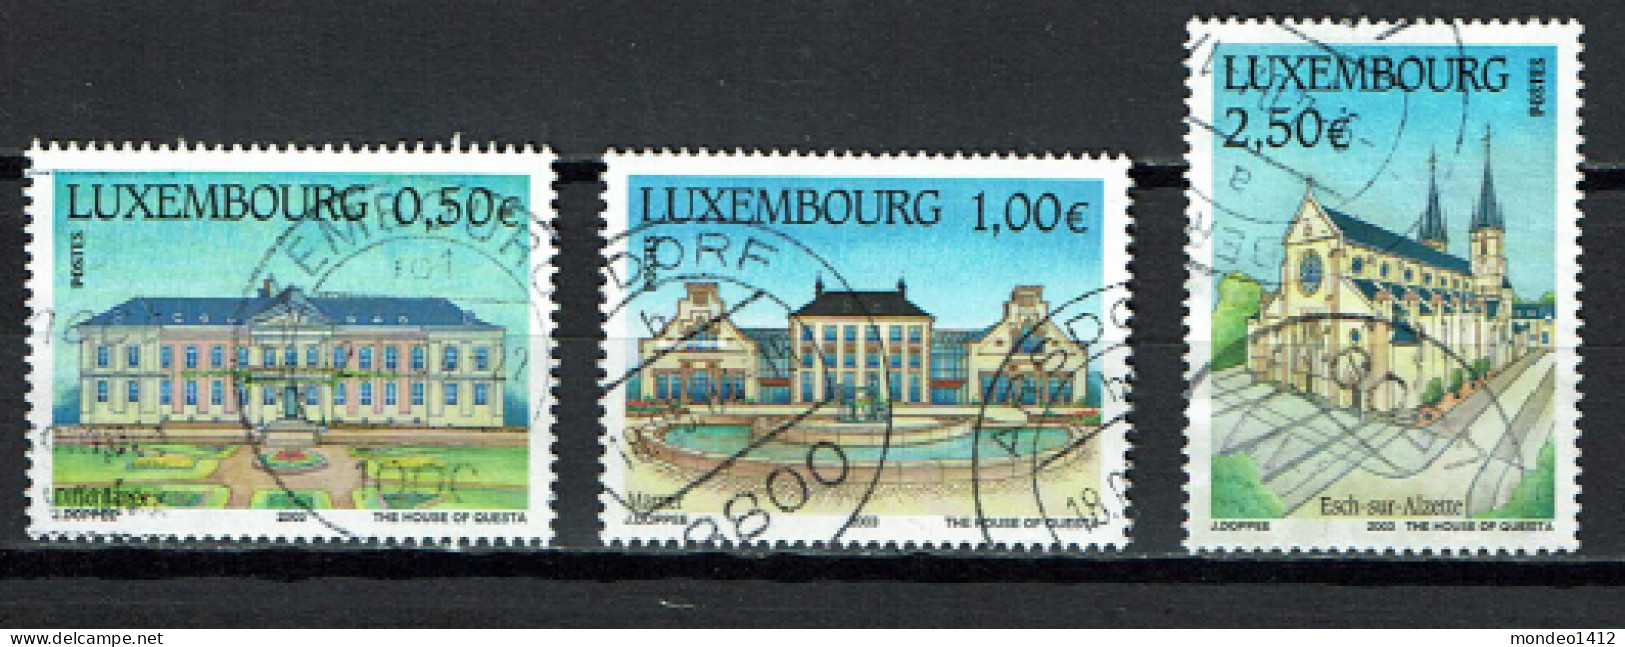 Luxembourg 2003 - YT 1551/1553 - Tourisme, Tourism - Maison De Soins, Château De Mamer, Église Saint-Joseph - Gebraucht